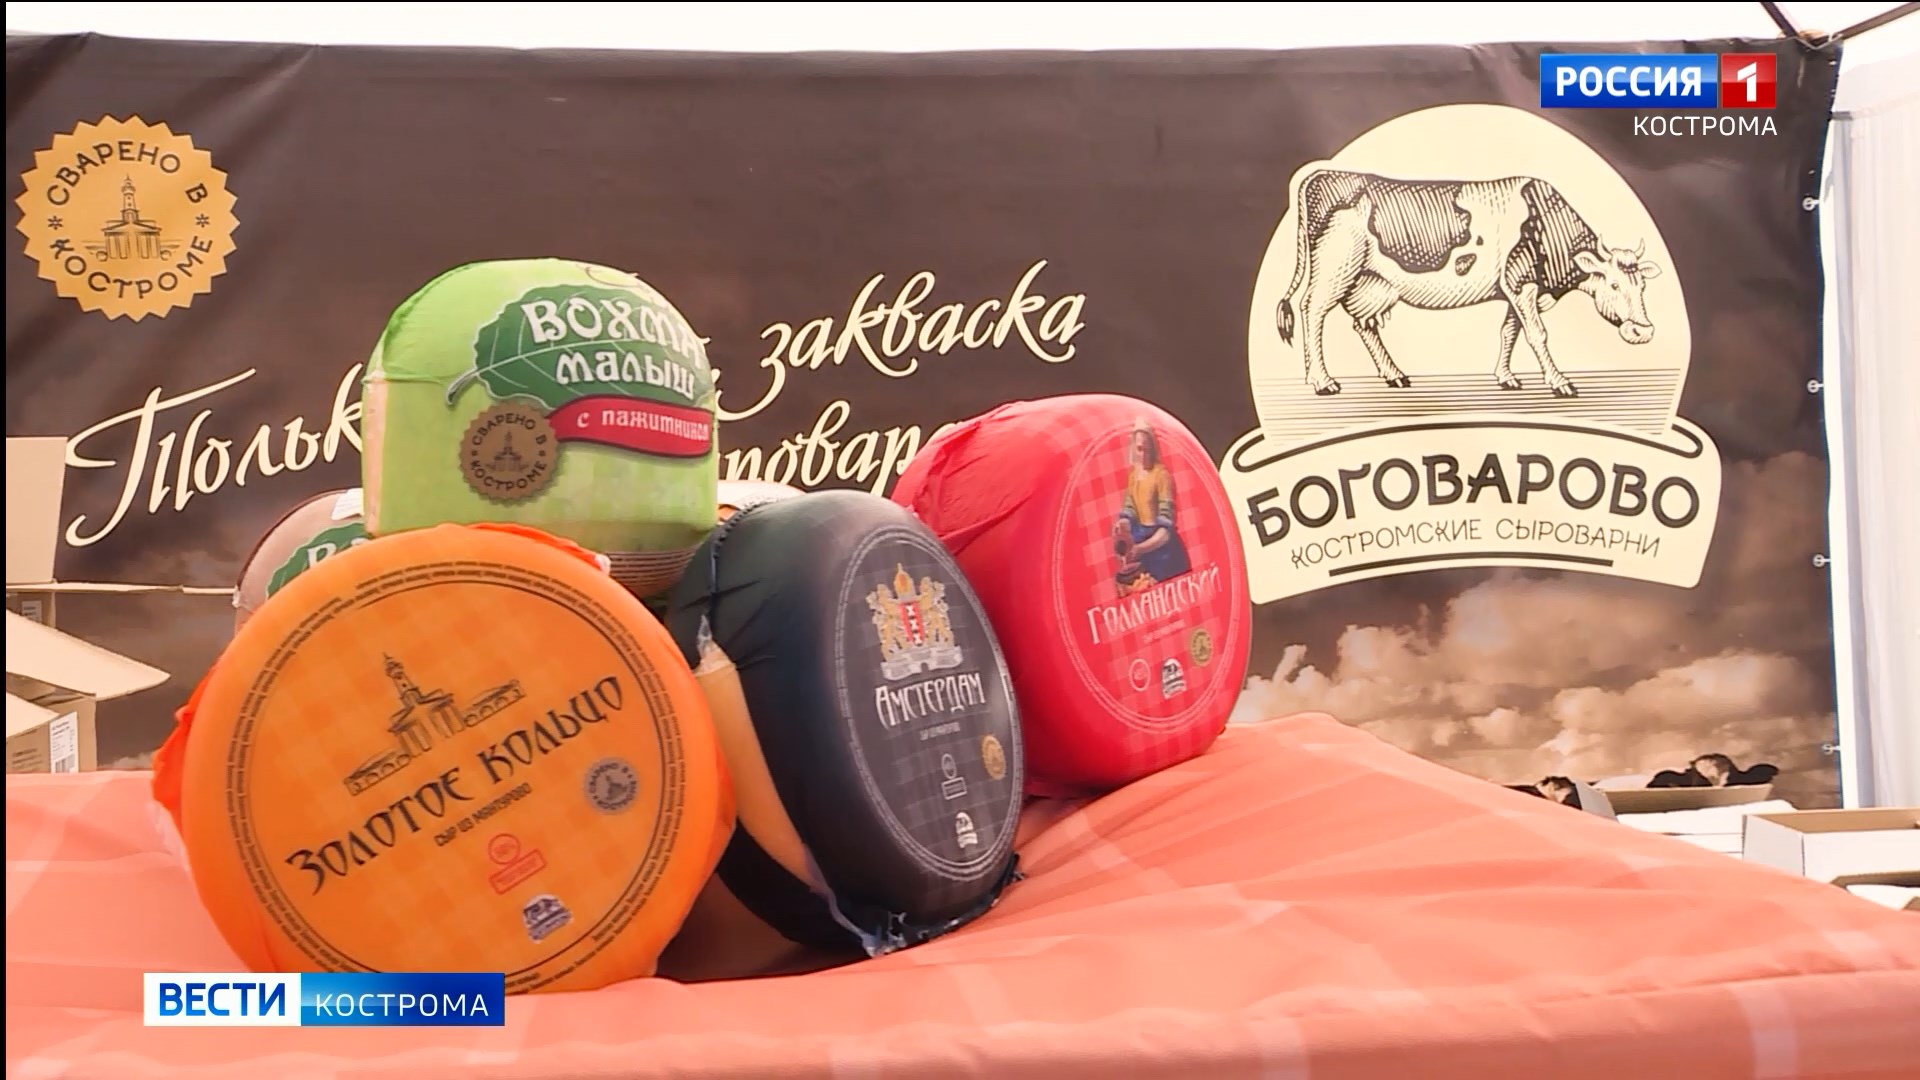 Праздник со вкусом: в Кострому после двухлетней паузы вернулся Фестиваль сыра